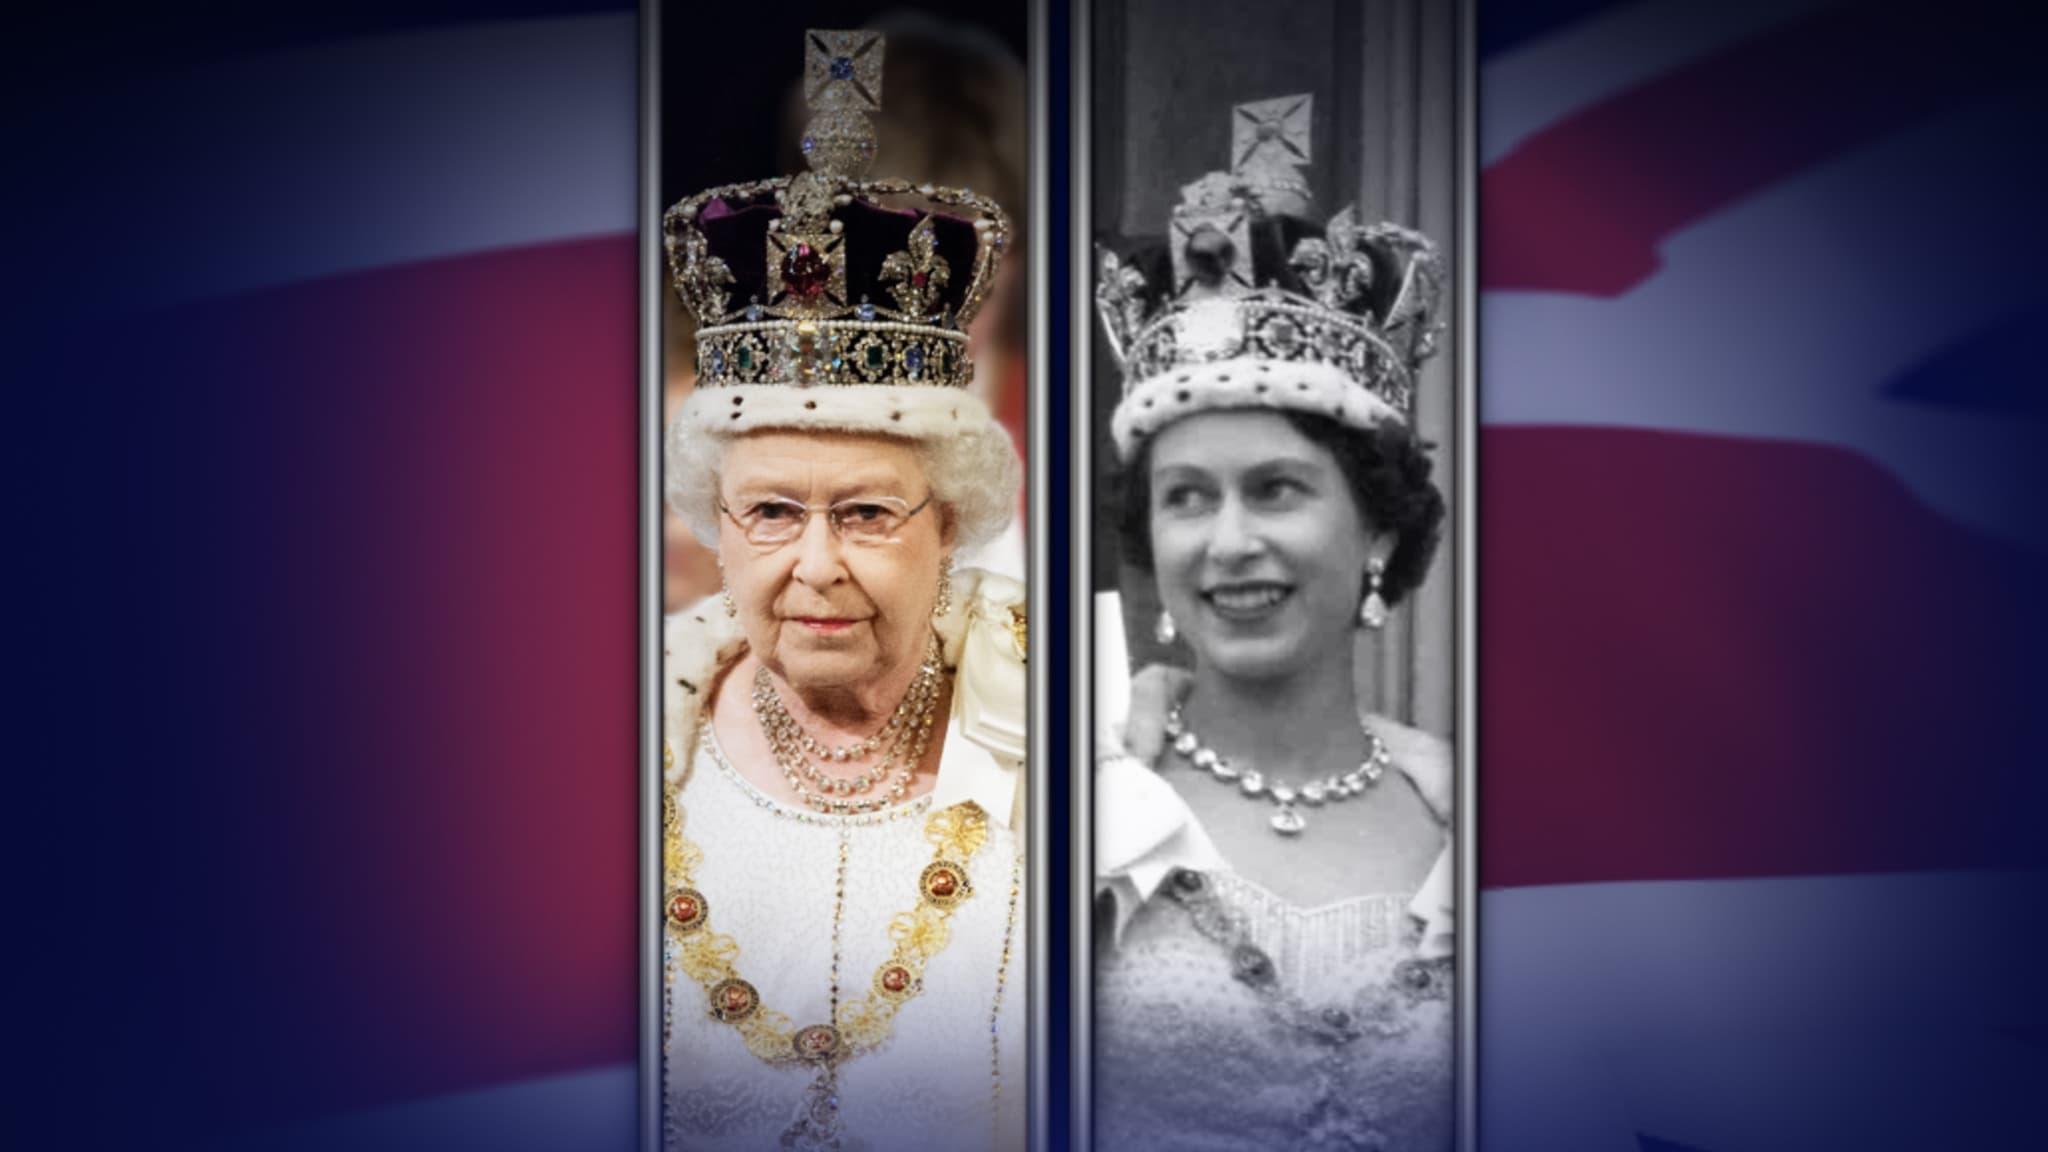 Queen Elizabeth II: A Royal Life - A Special Edition of 20/20 backdrop